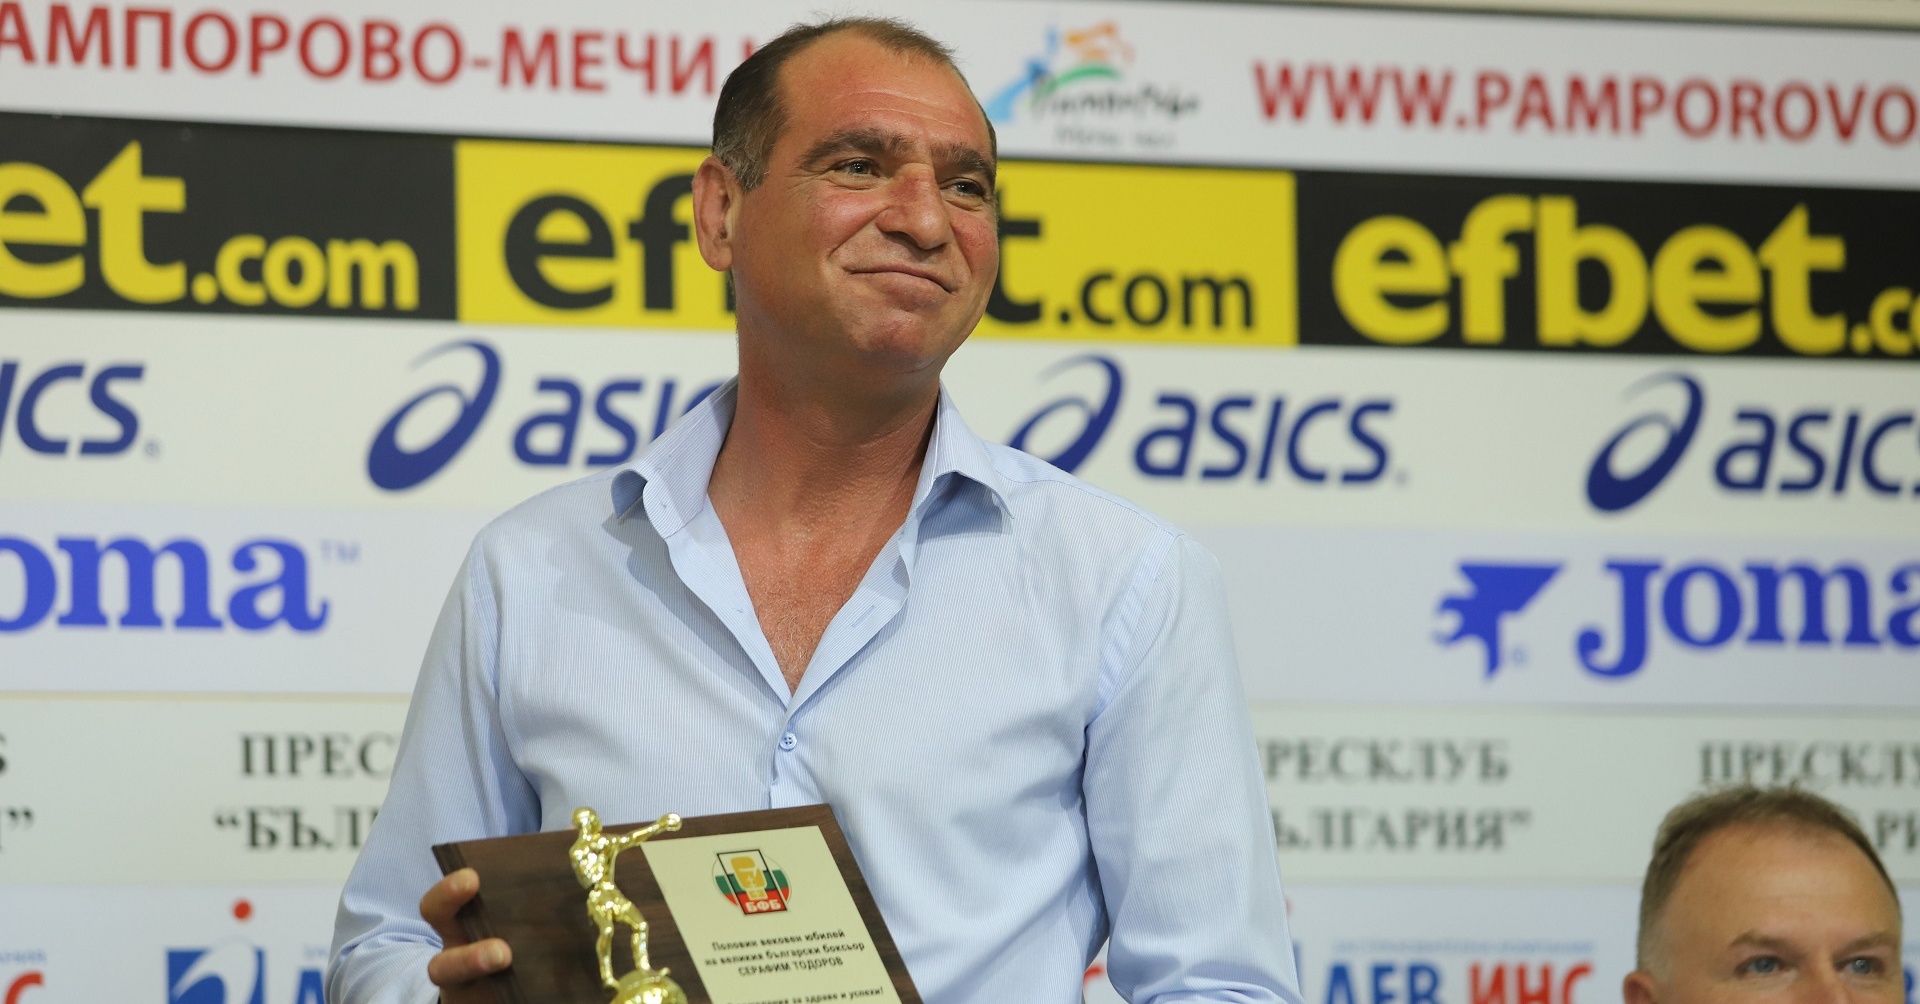 30 години по-късно „Сарафа“ очаква признание от Българската федерация по бокс (ВИДЕО)